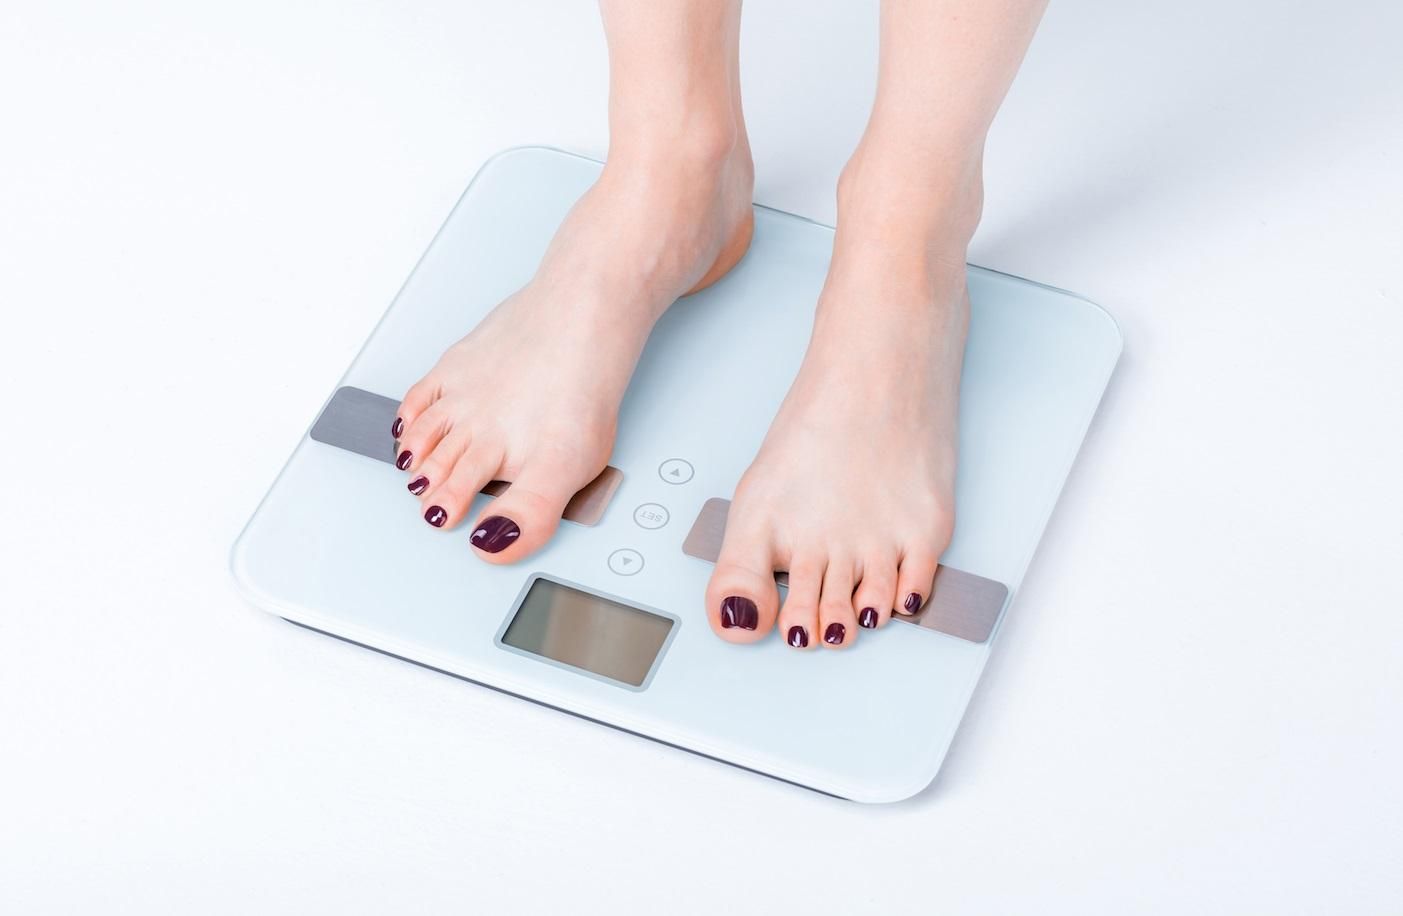 Де знайти підтримку під час схуднення: 4 корисних ідеї